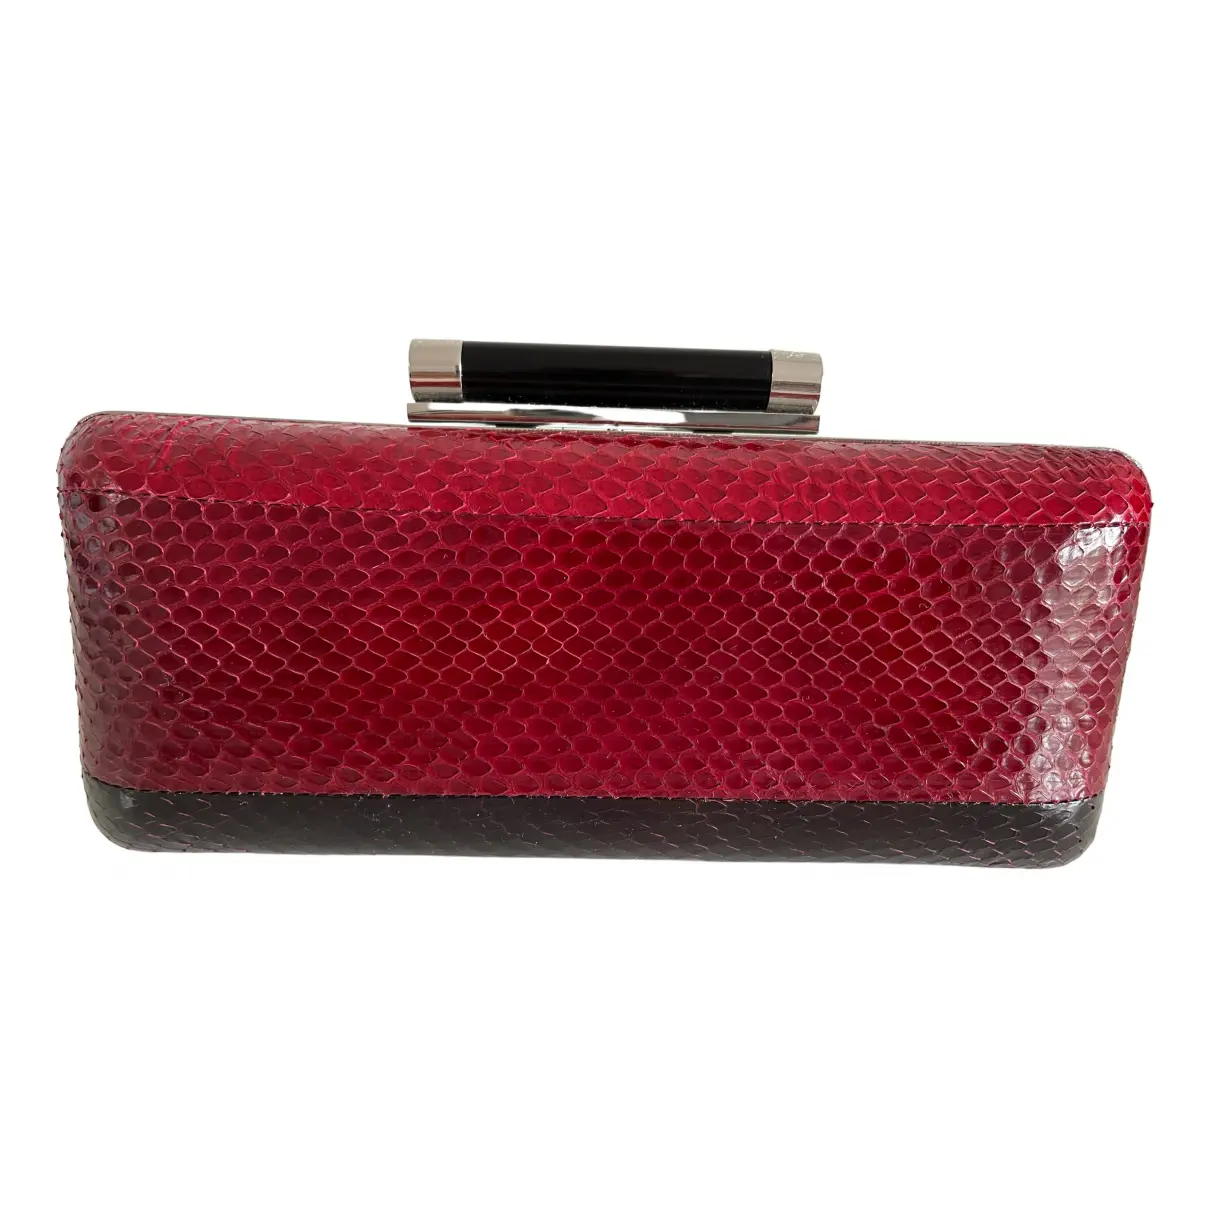 Leather handbag Diane Von Furstenberg